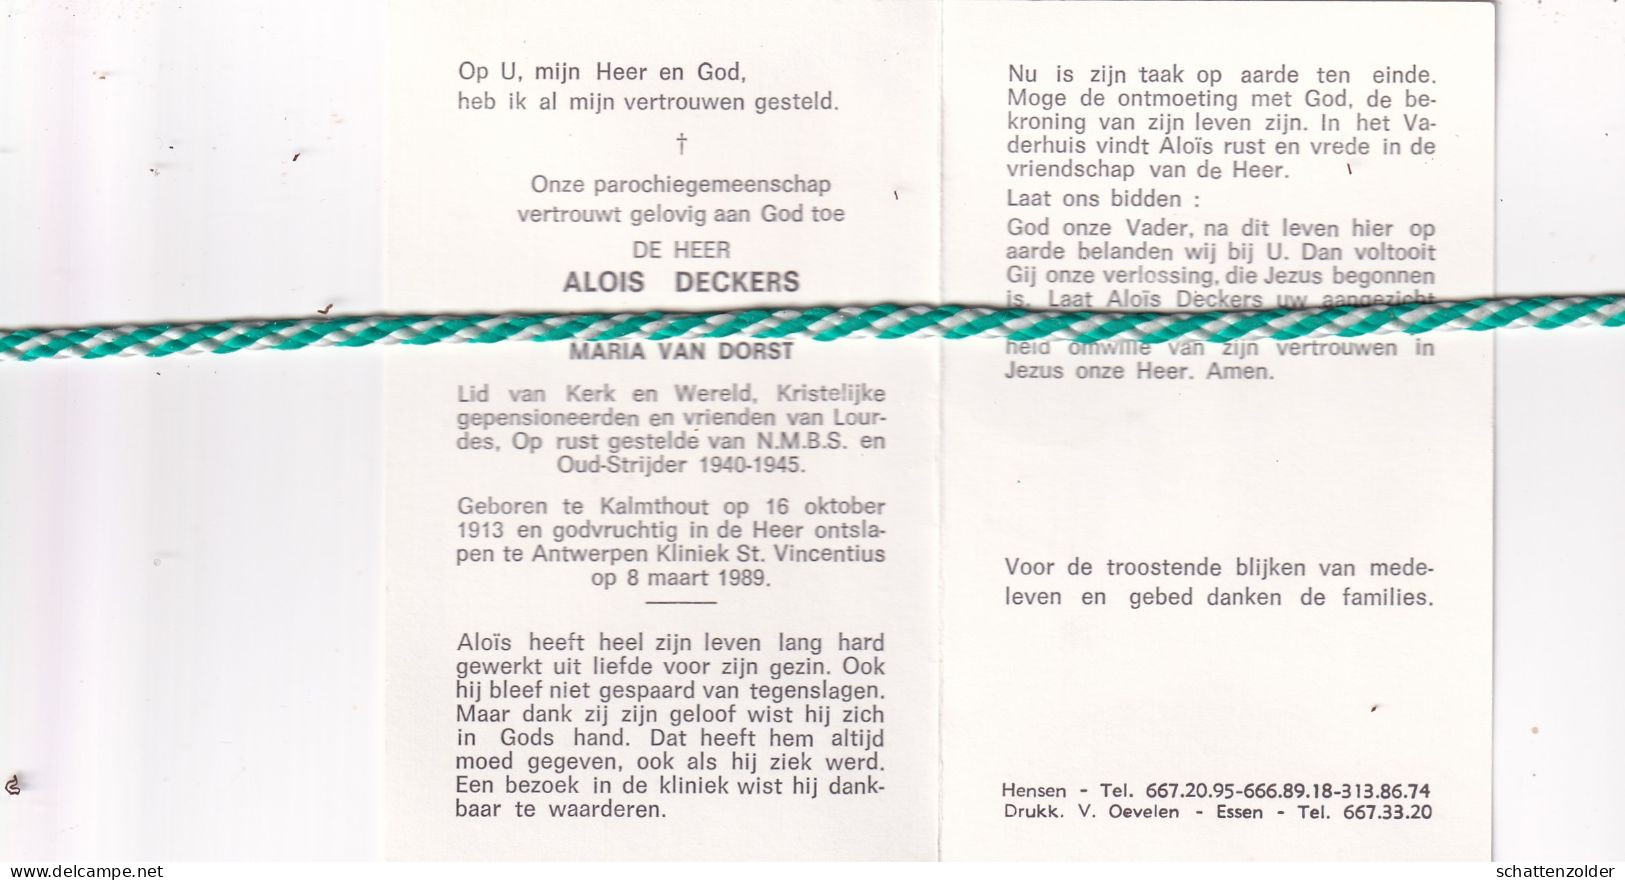 Alois Deckers-Van Dorst, Kalmthout 1913, Antwerpen 1989. Oud-strijder 40-45 - Overlijden